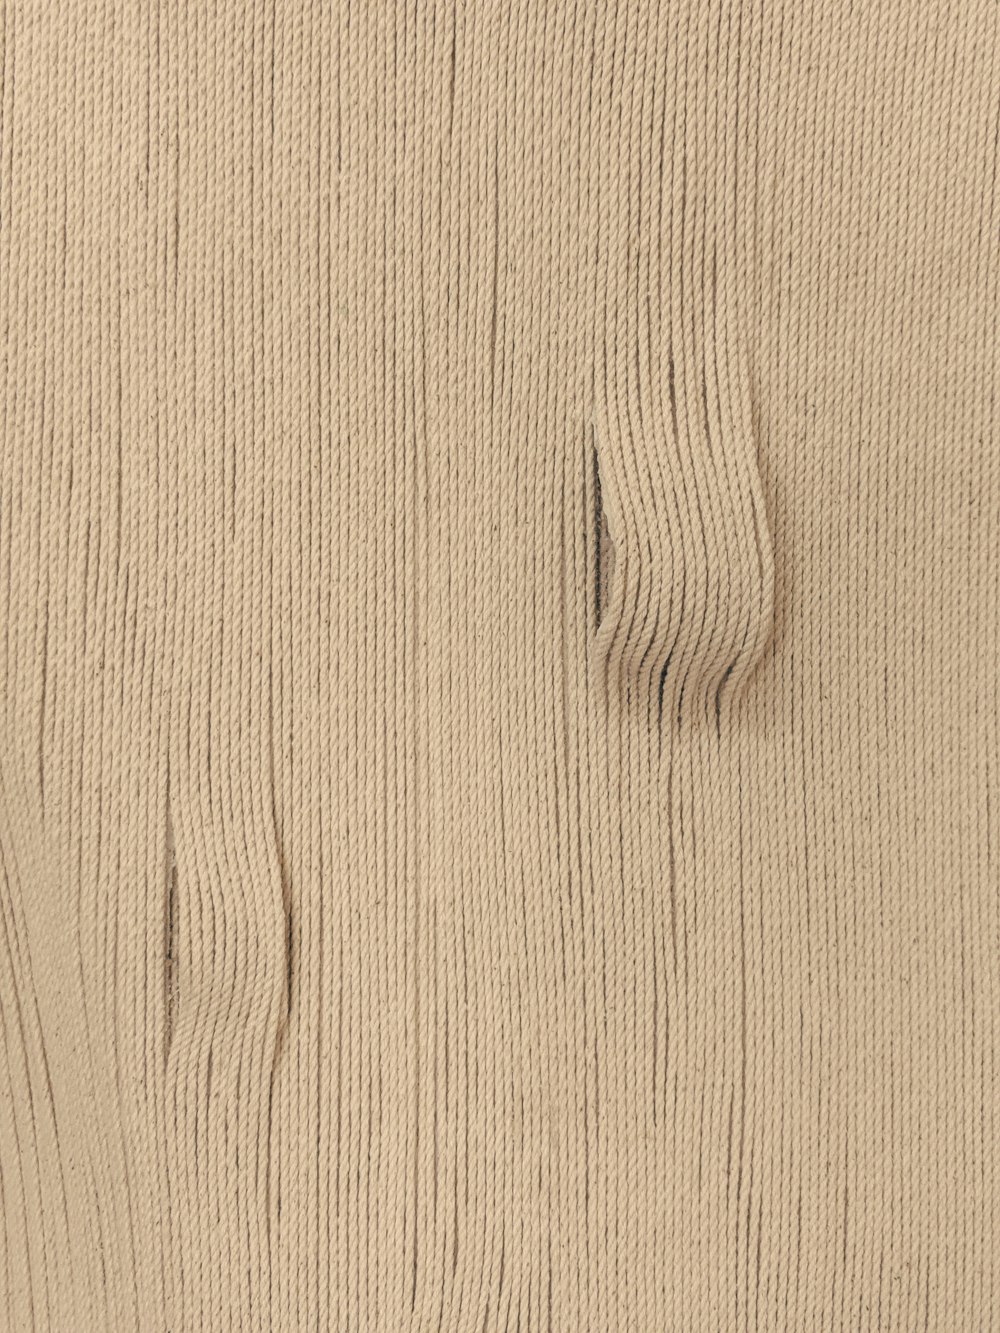 Vue rapprochée d’une surface en bois